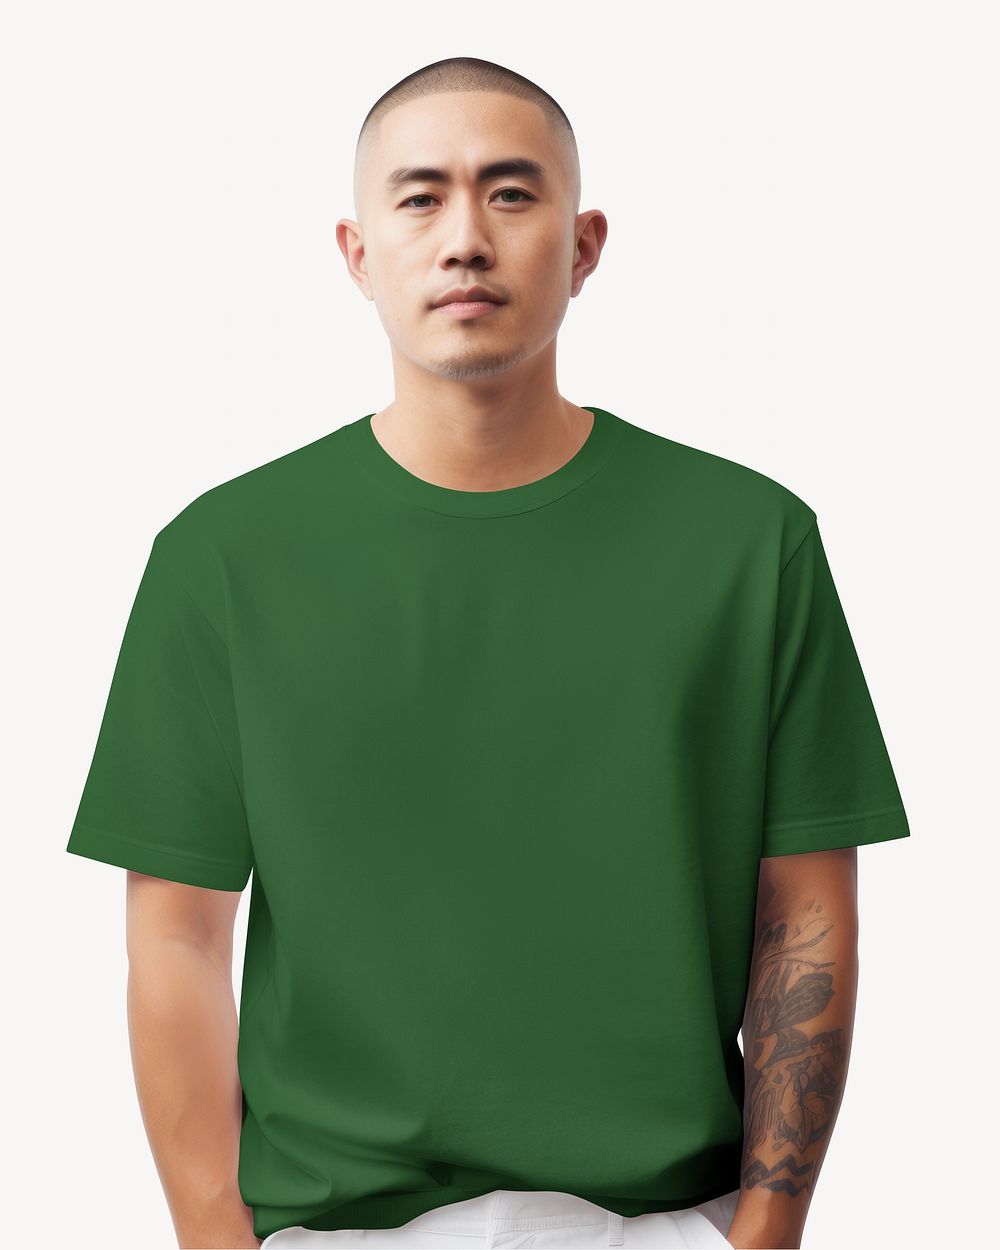 Green streetwear shirt, design resource